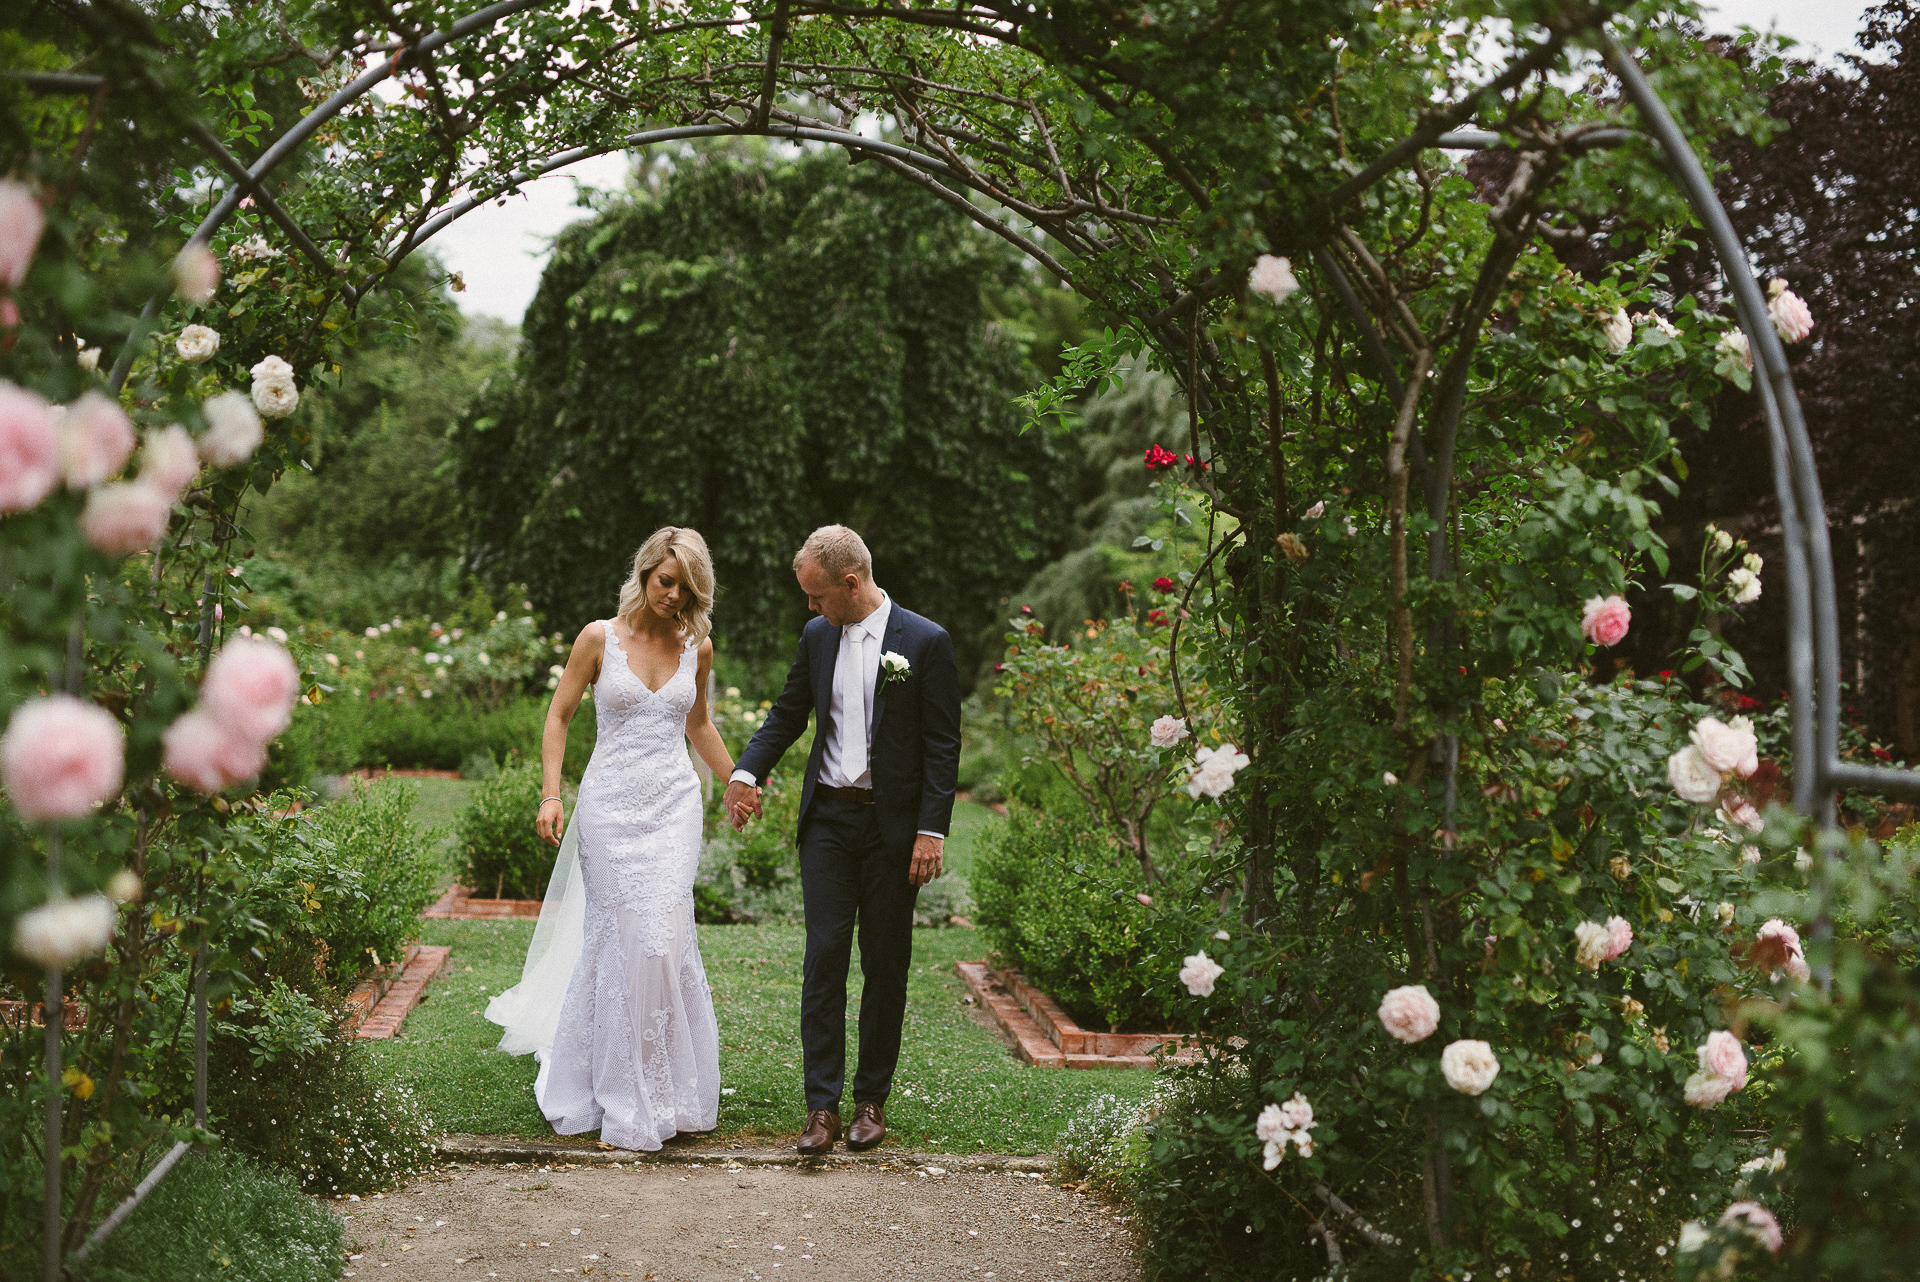 Michelle + Dan – Alru Farm Wedding, Adelaide Hills